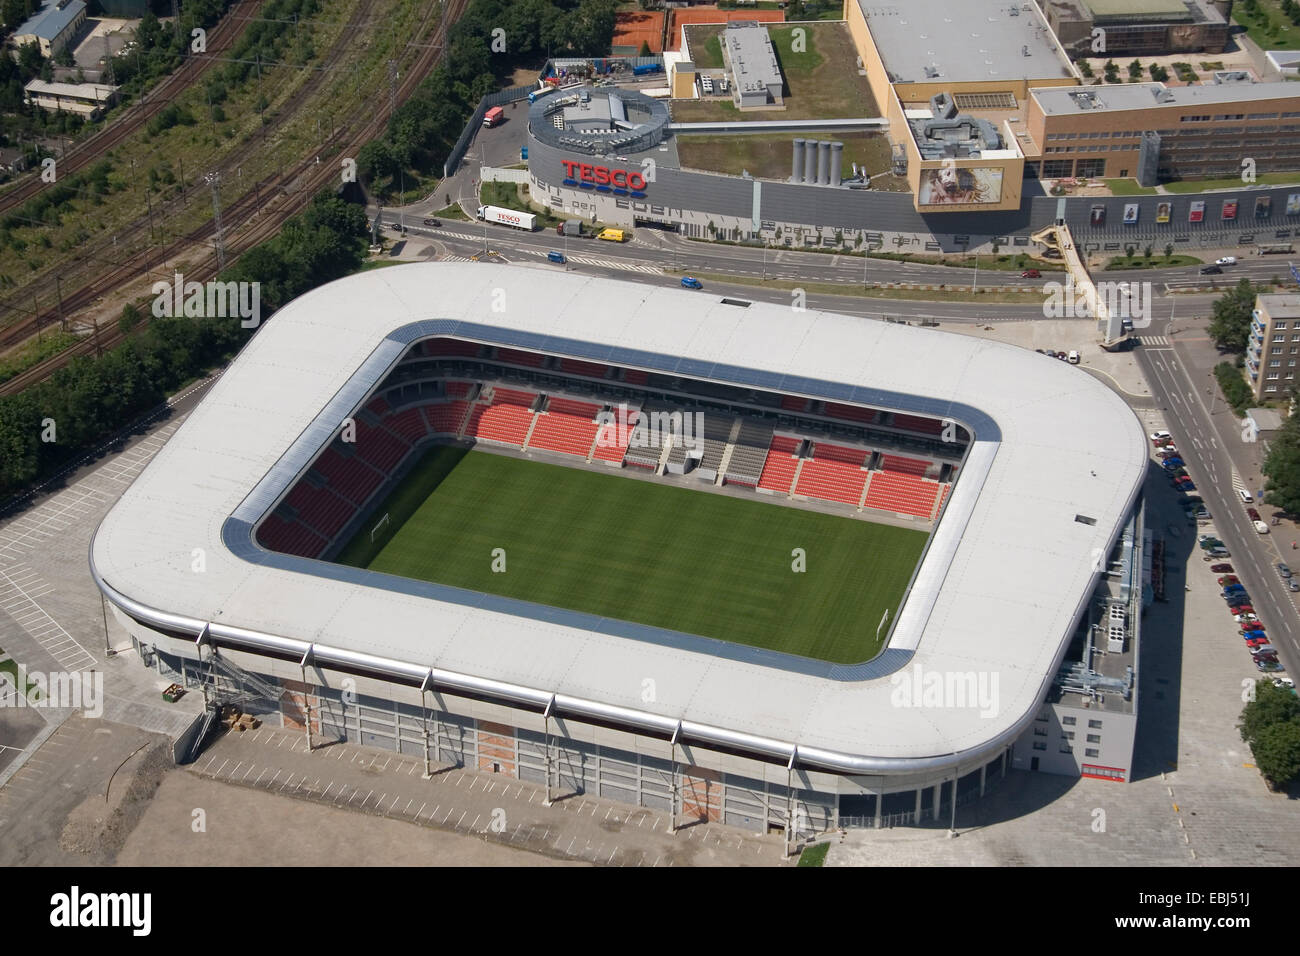 File:Stadion Eden.jpg - Wikimedia Commons